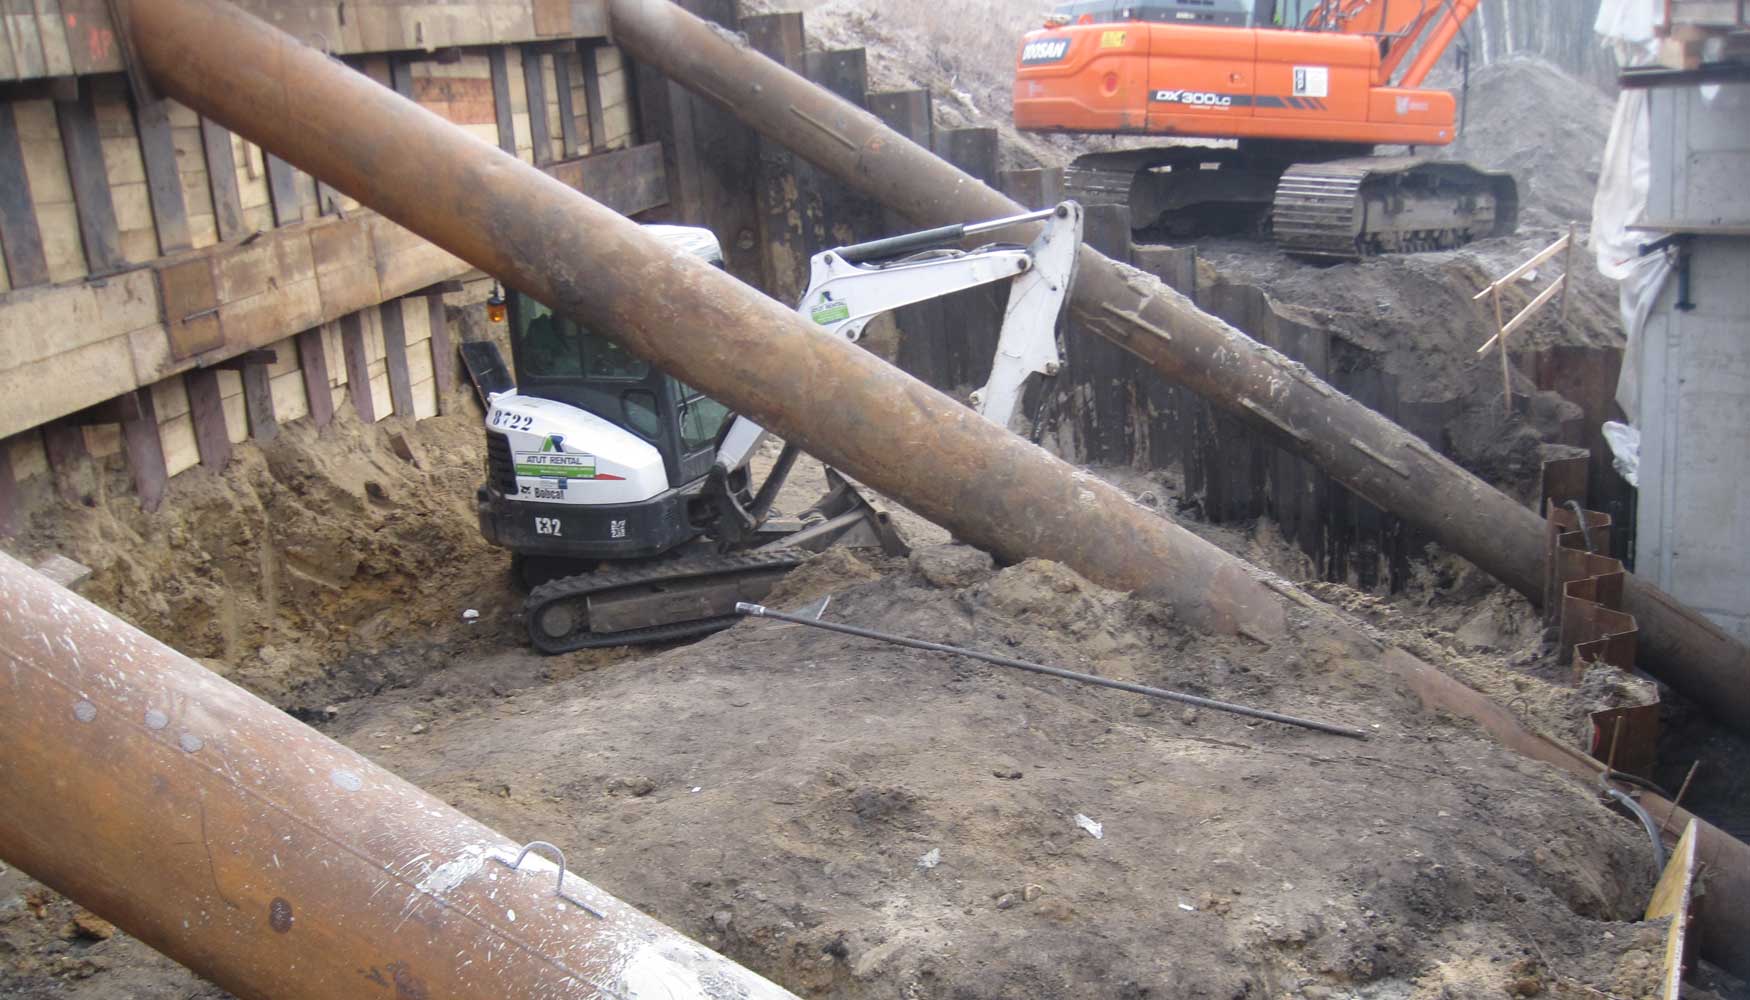 Gracias a su compacidad la excavadora Bobcat puede llegar a lugares imposibles para otras mquinas